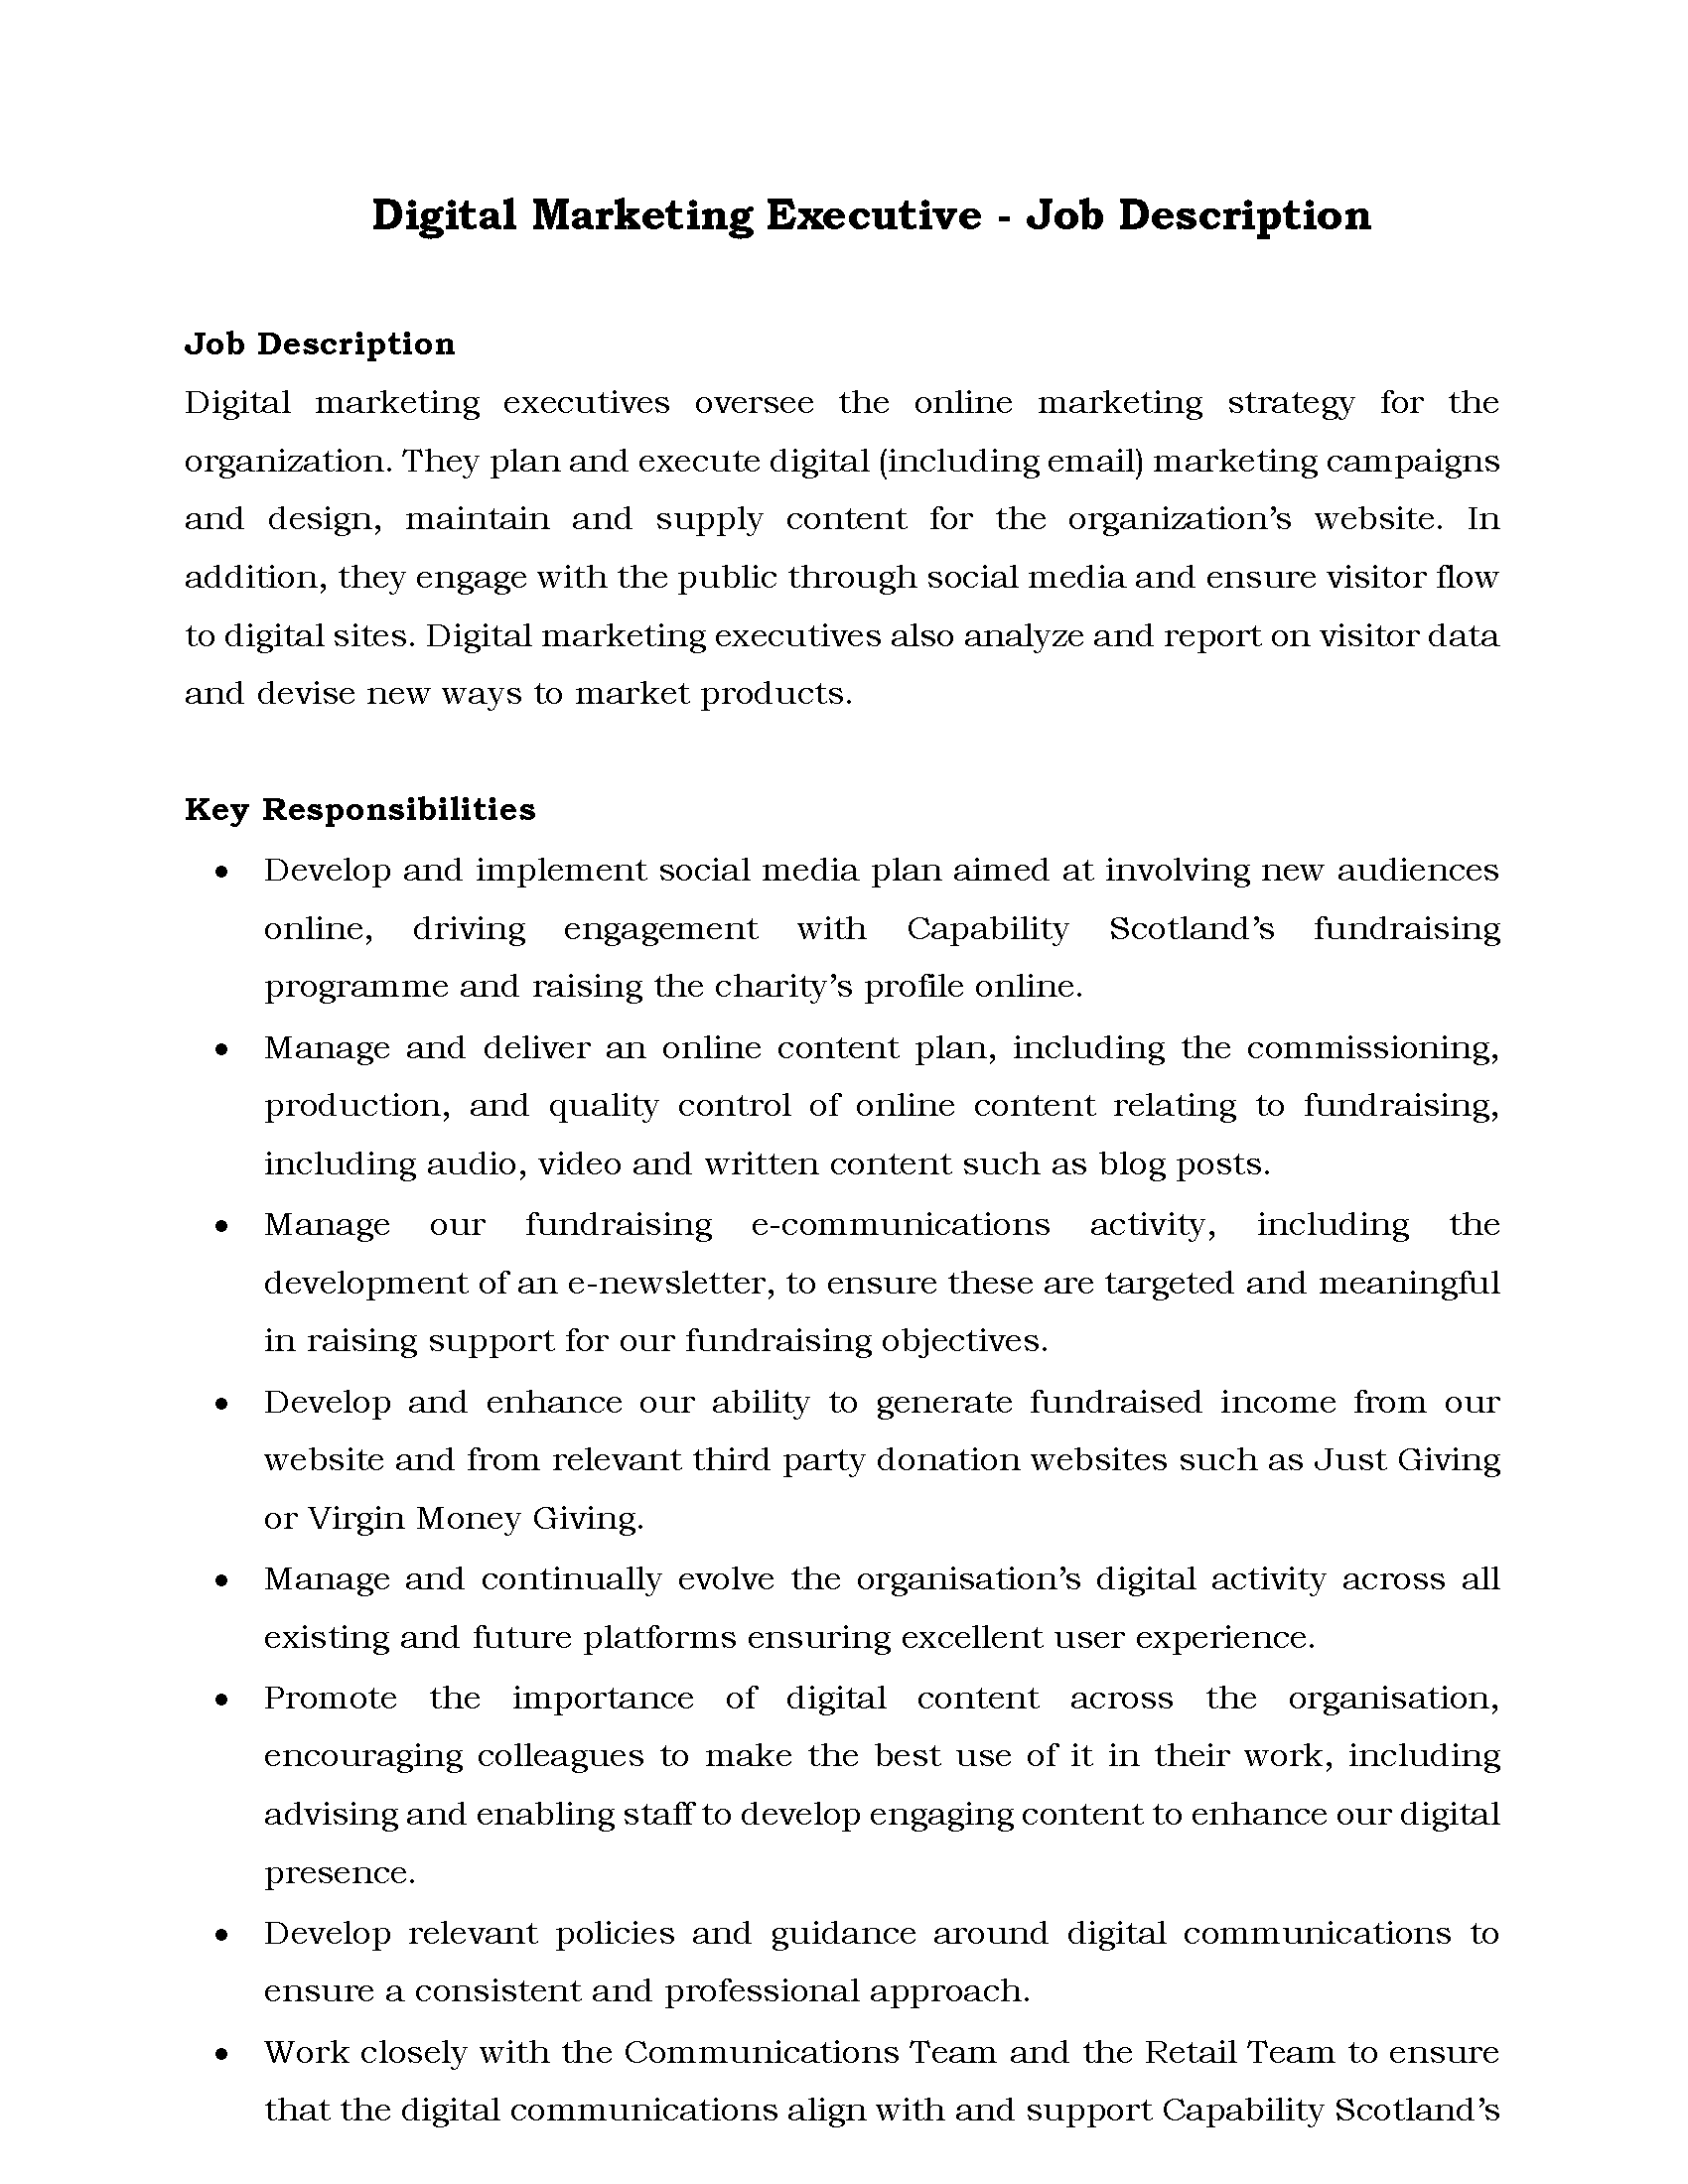 29-Digital Marketing Executive - Job Description-converted